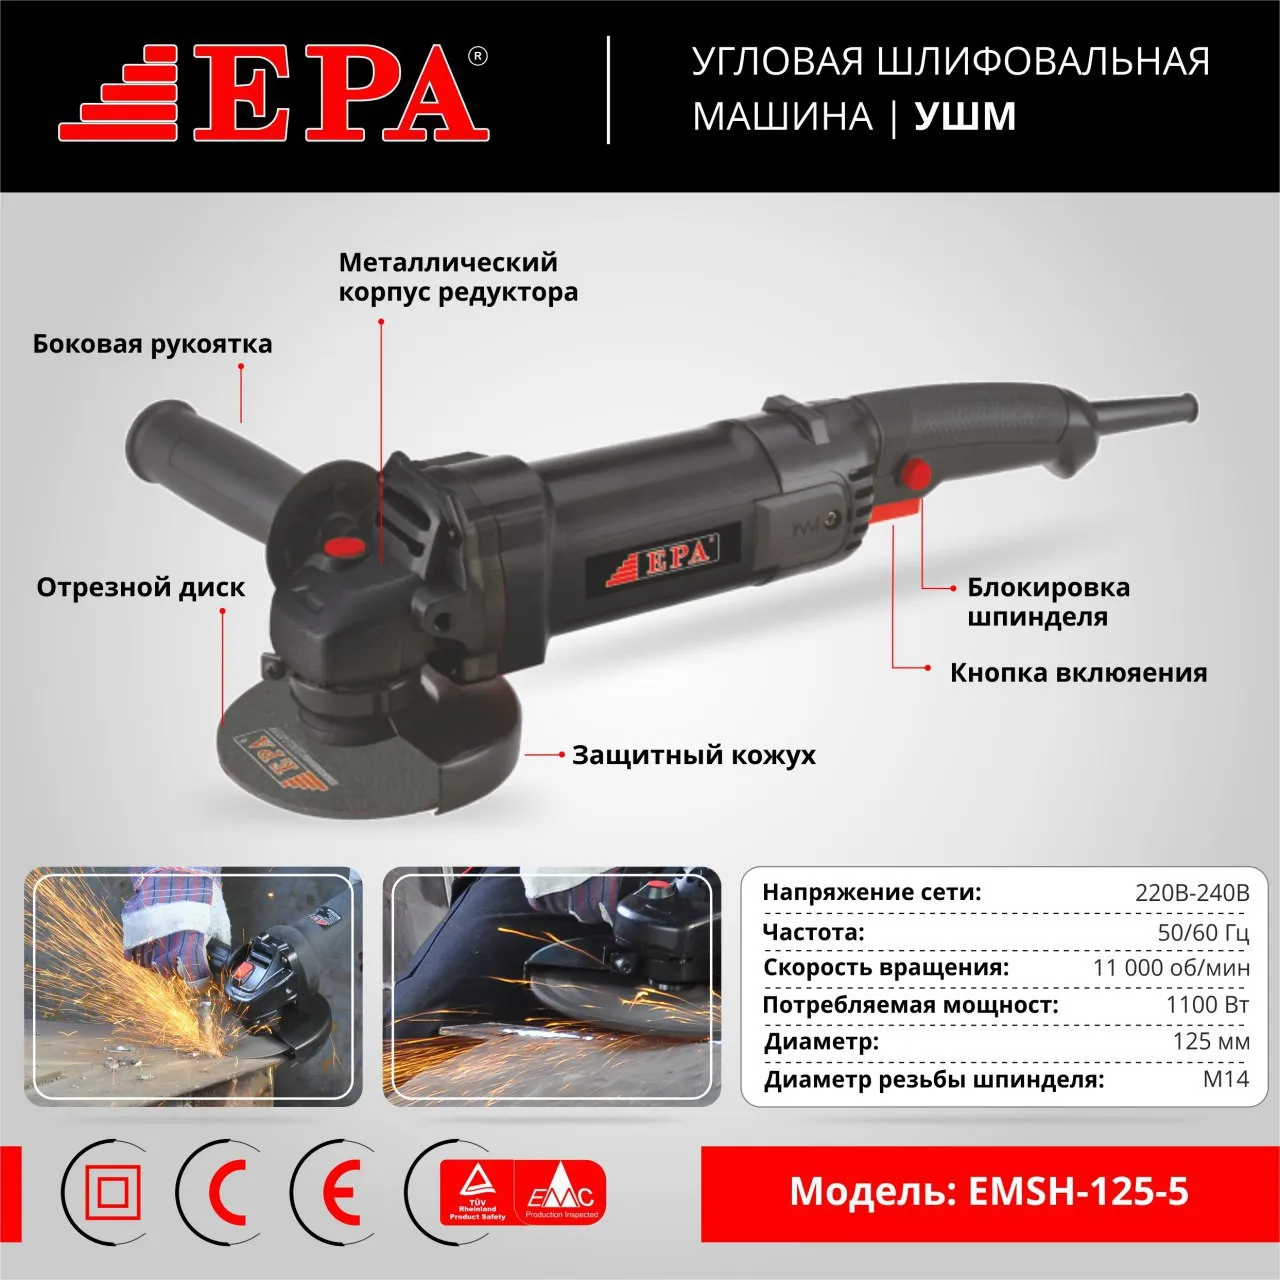 Угловая шлифовальная машина EPA  EMSH-125-5#1